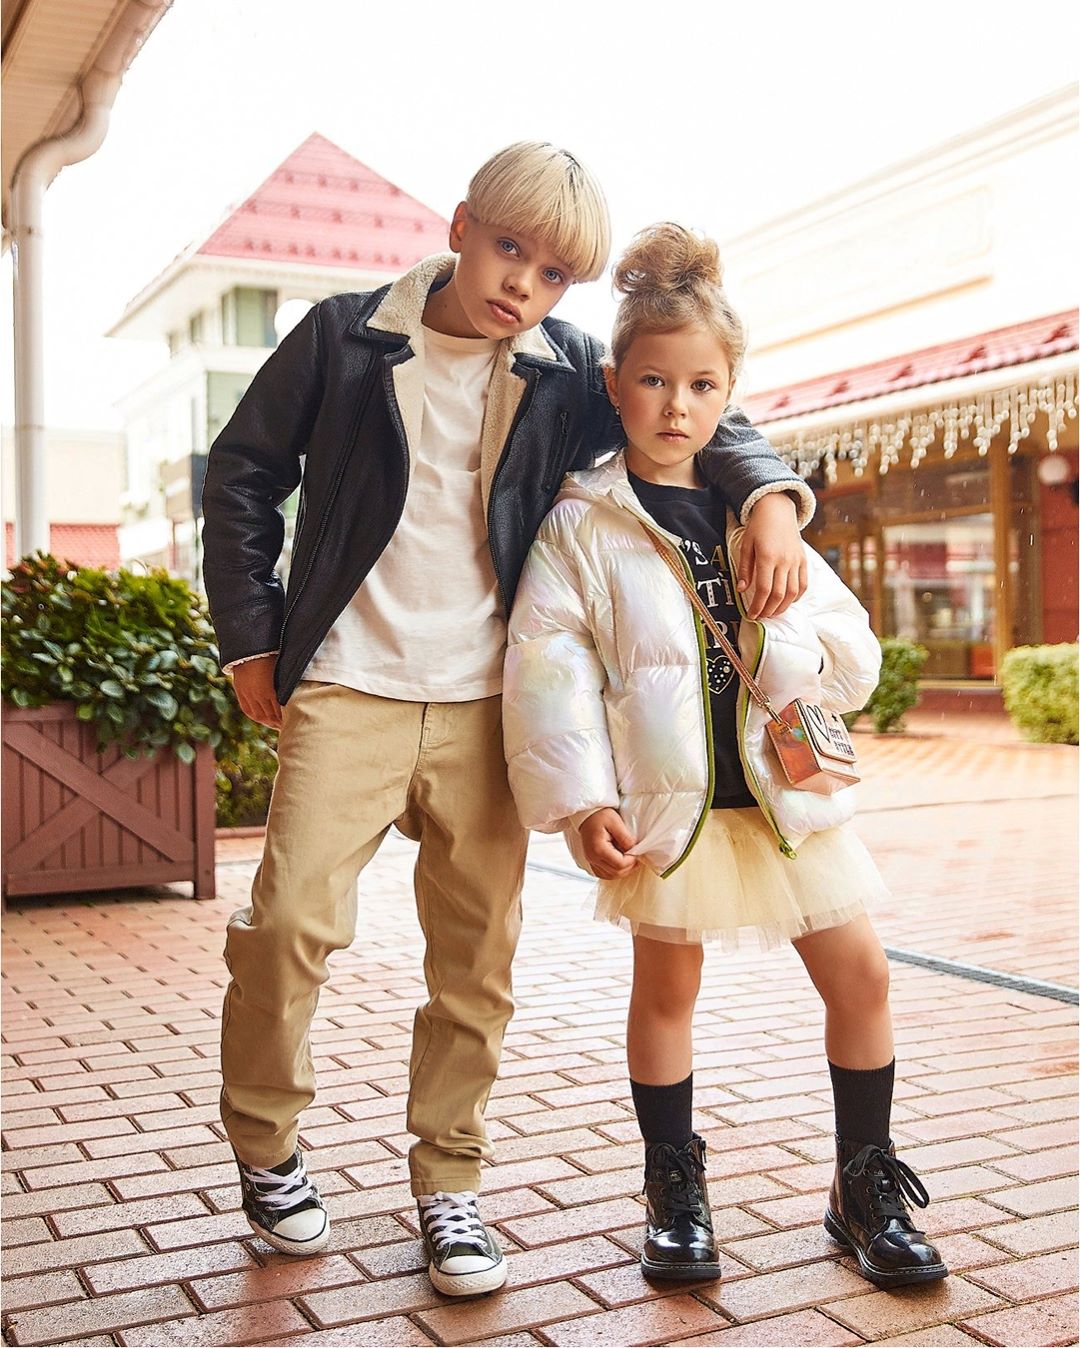 ORIGINAL MARINES RUSSIA - Юные модники возвращаются в большой город. Чтобы они были в центре внимания, выберите им стильные комплекты из  осенней коллекции Original Marines!
⠀
Как и всегда, наша новая...